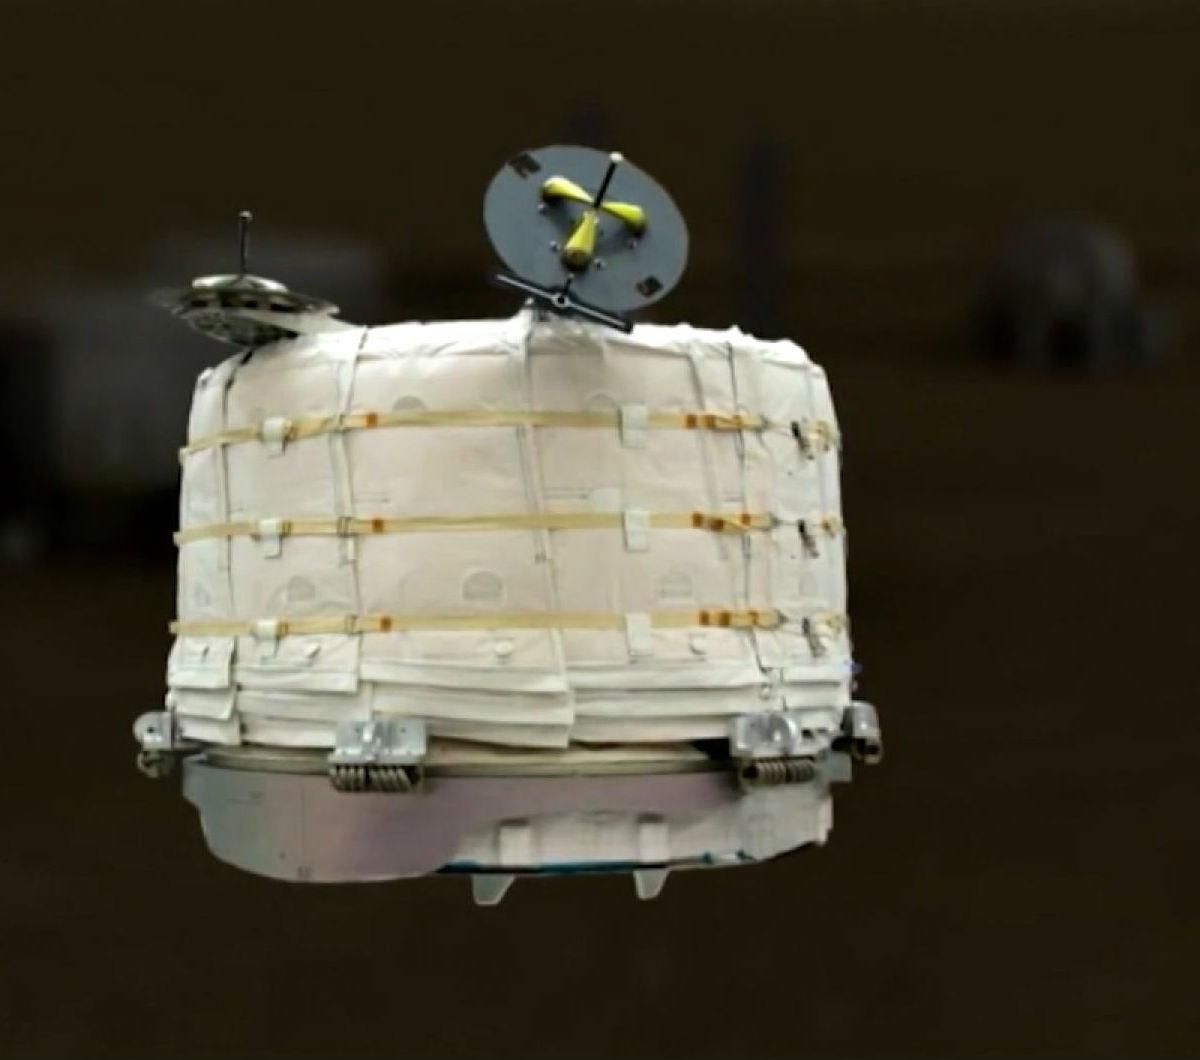 NASA запустит надувной жилой модуль в космос